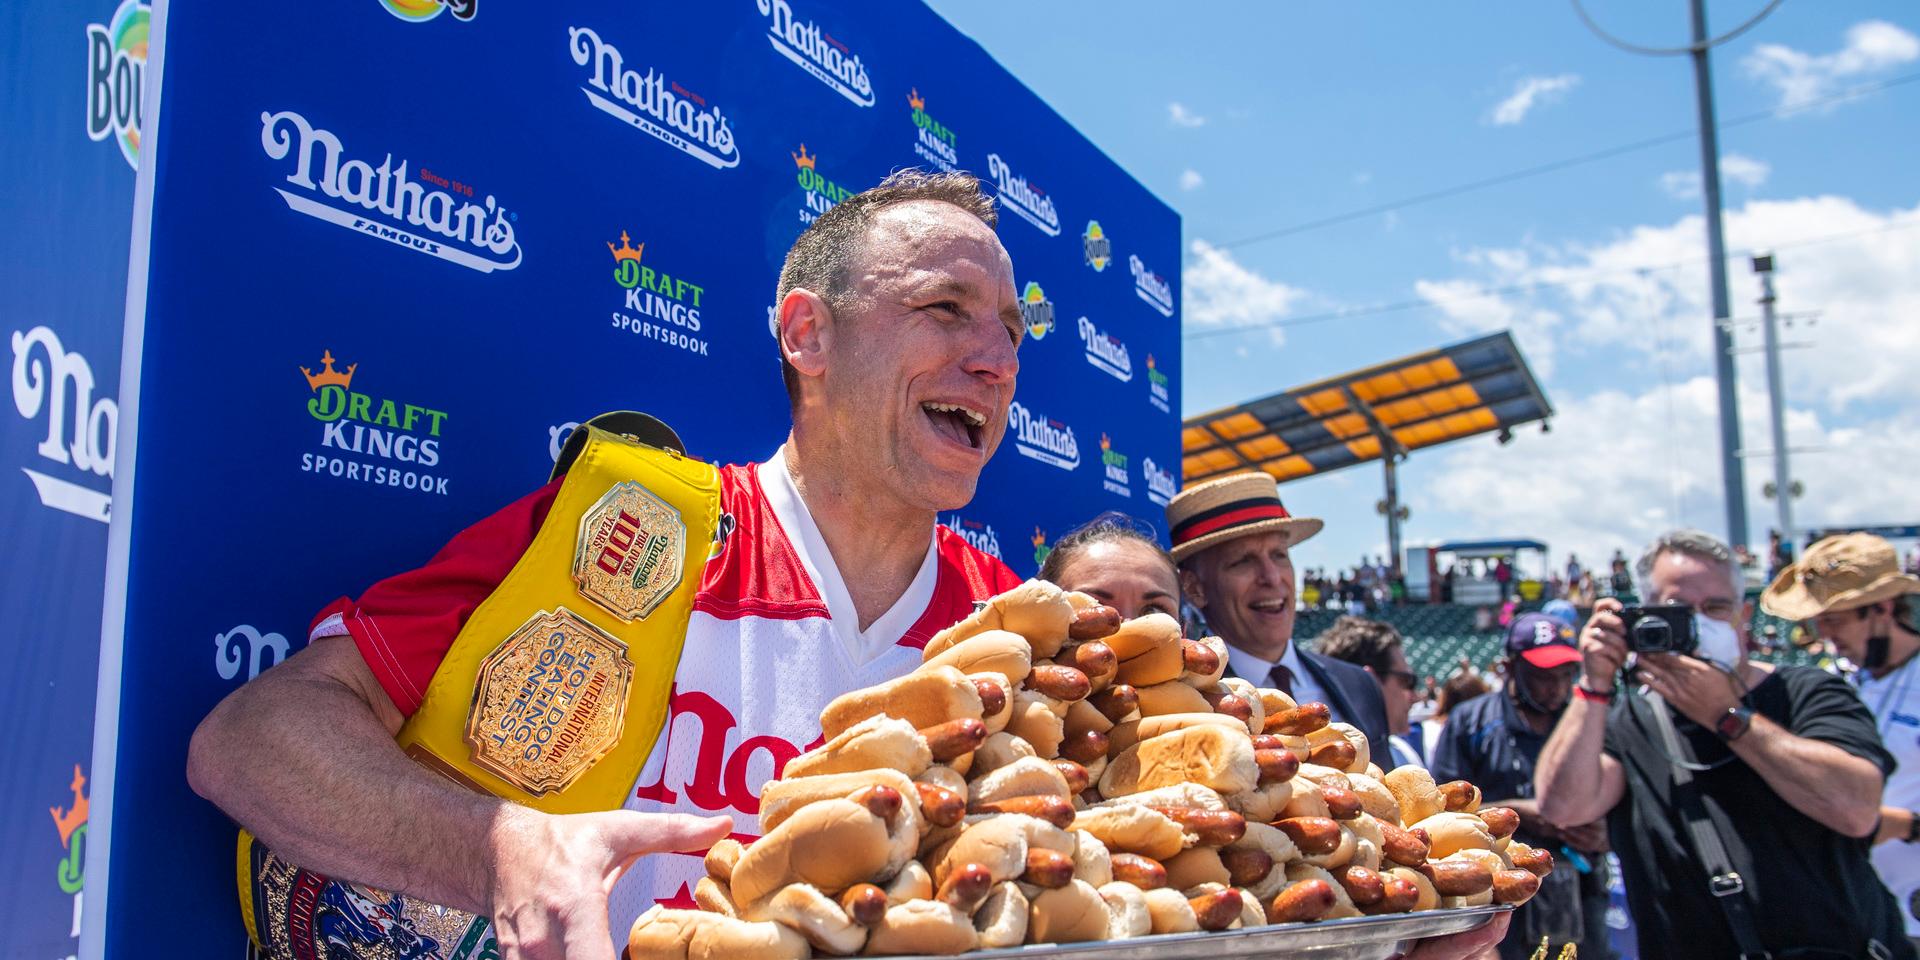 Förra året slog Joey Chestnut världsrekord genom att äta 76 korvar. 